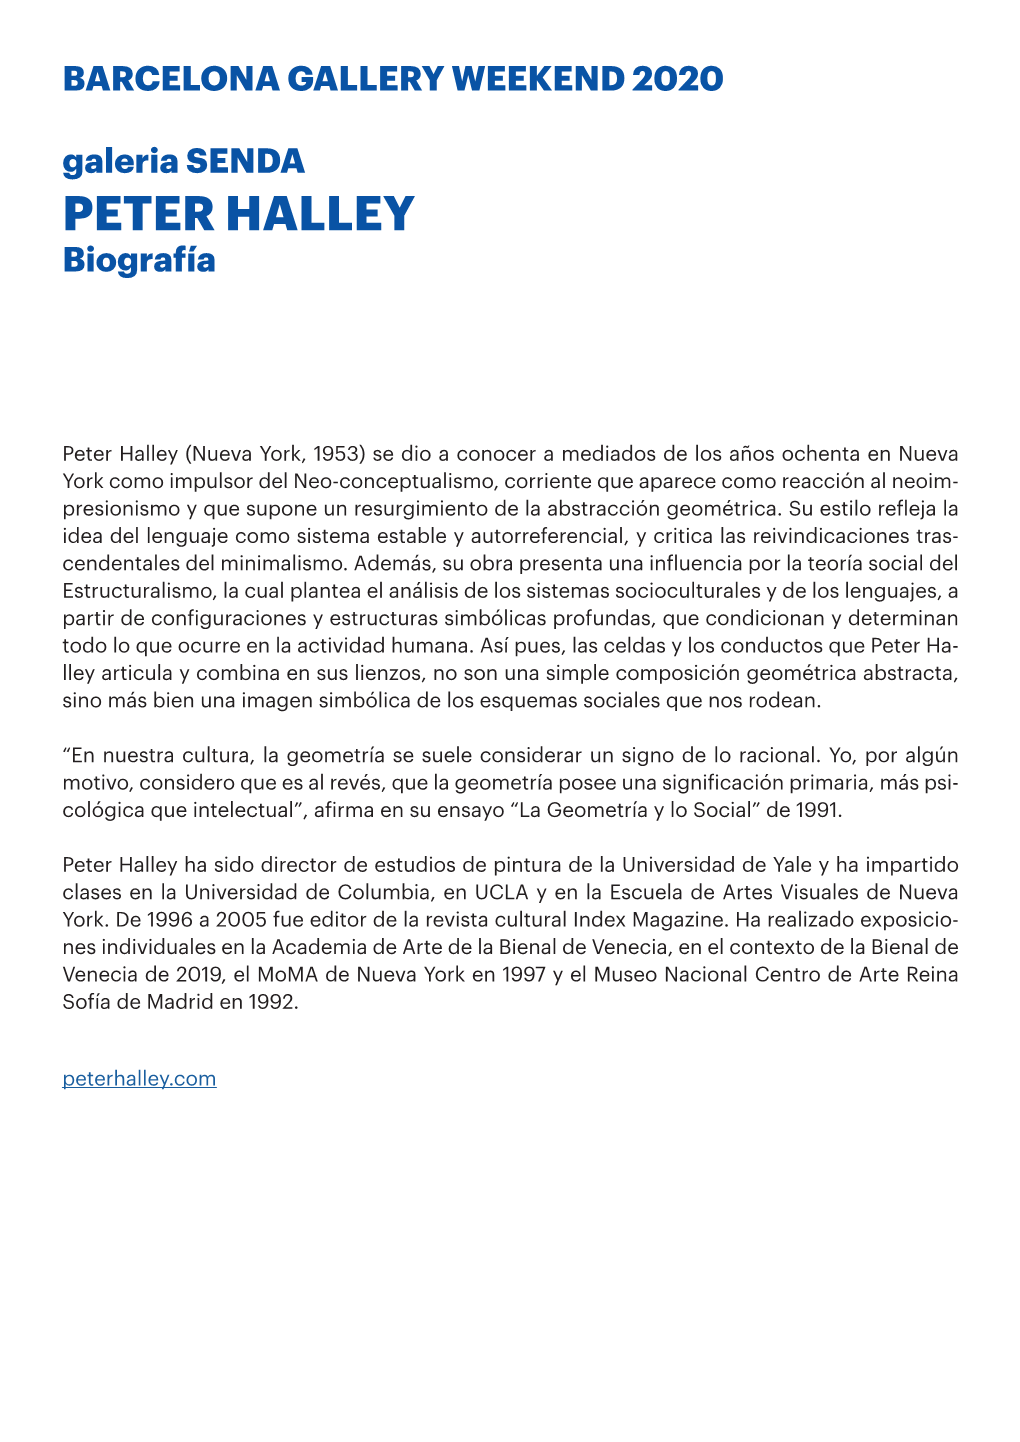 PETER HALLEY Biografía